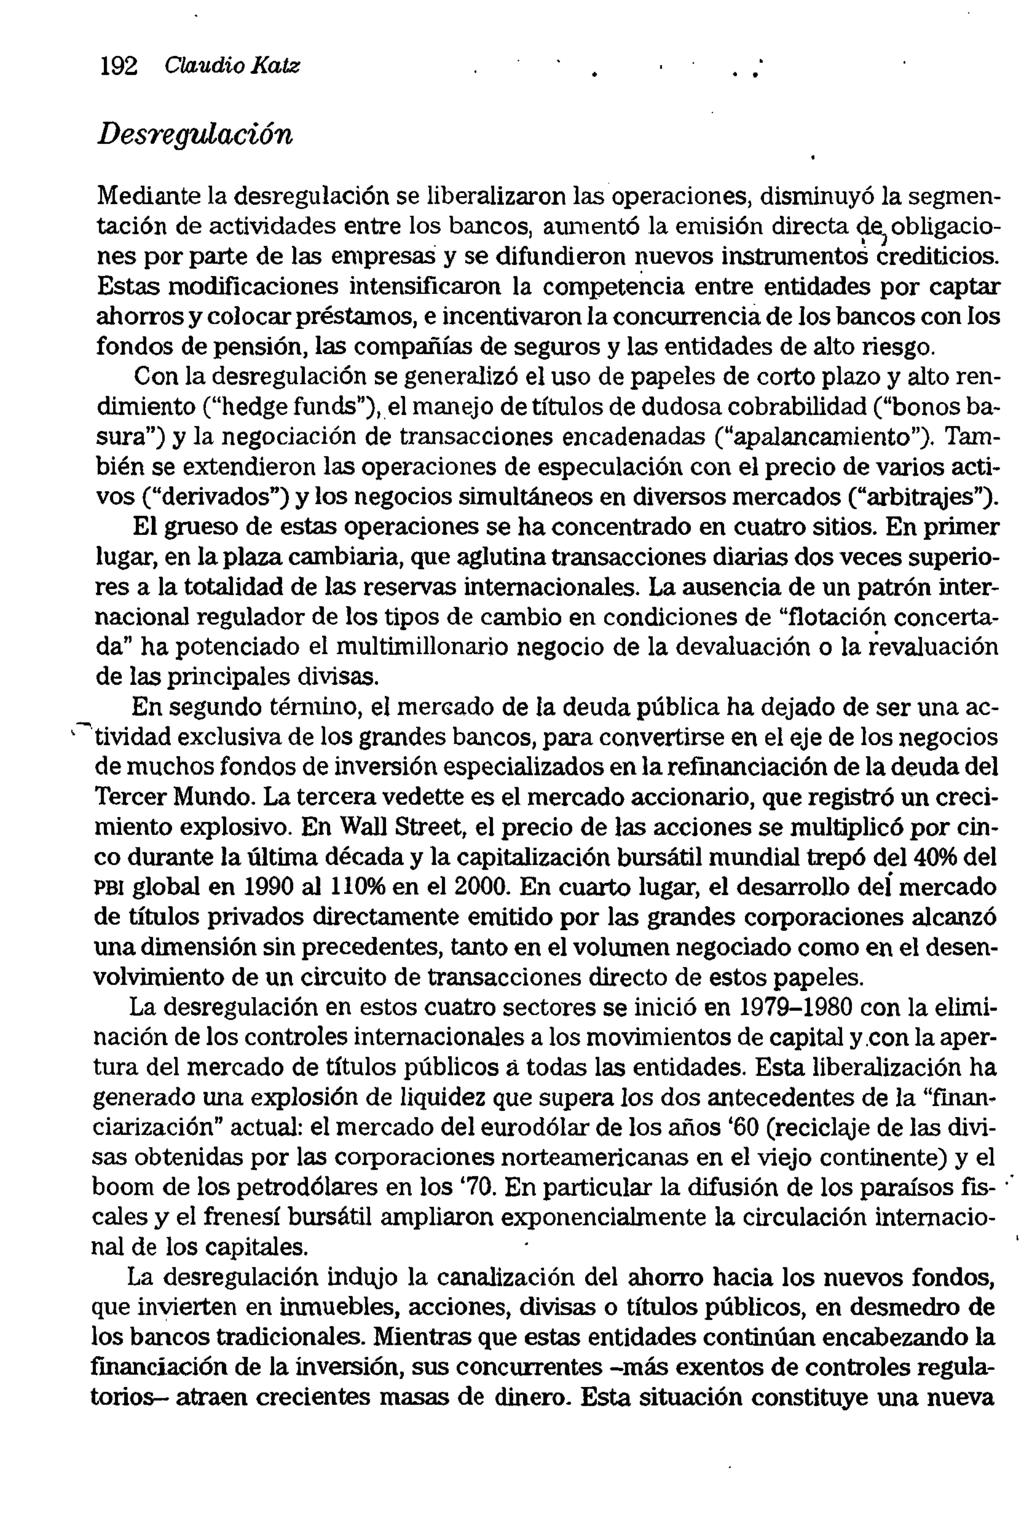 192 Claudio Katz Desregulación Mediante la desregulacíón se liberalizaron las operaciones, disminuyó la segmentación de actividades entre los bancos, aumentó la emisión directa 9-~obligaciones por